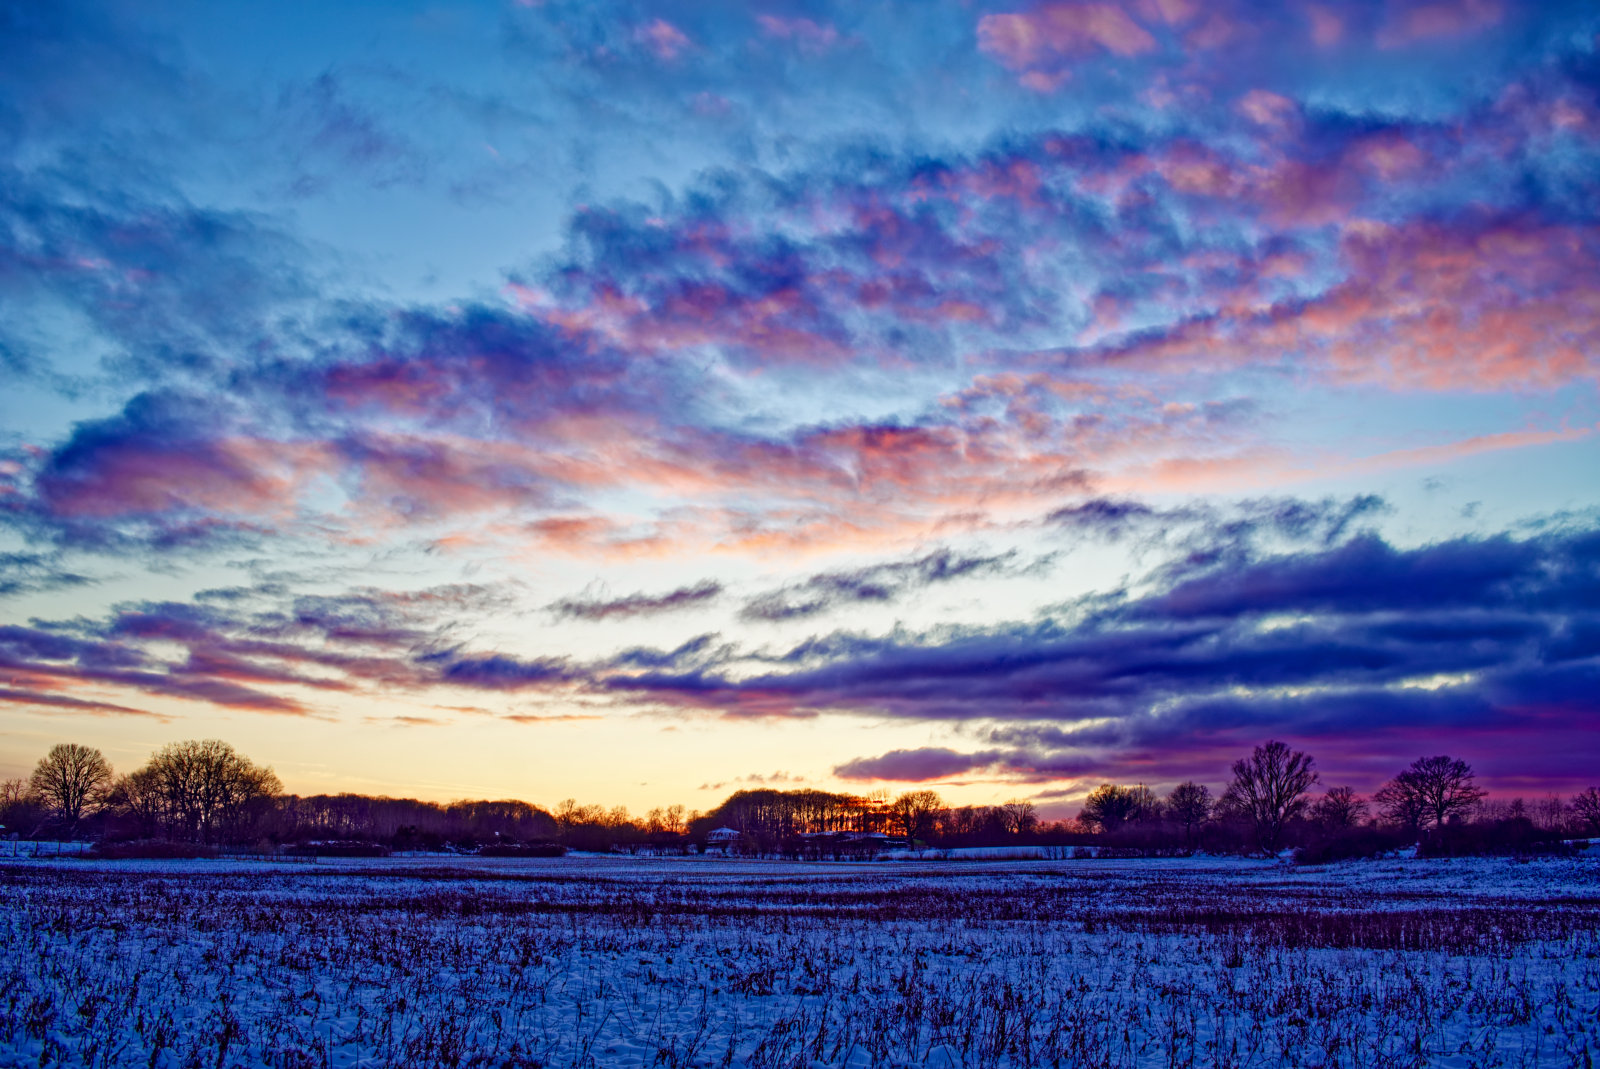 Ein Feld mit restlichen SonnenBlumen, das verschneit ist, unter einem Himmel mit dramatisch lila leuchtenden Wolken.